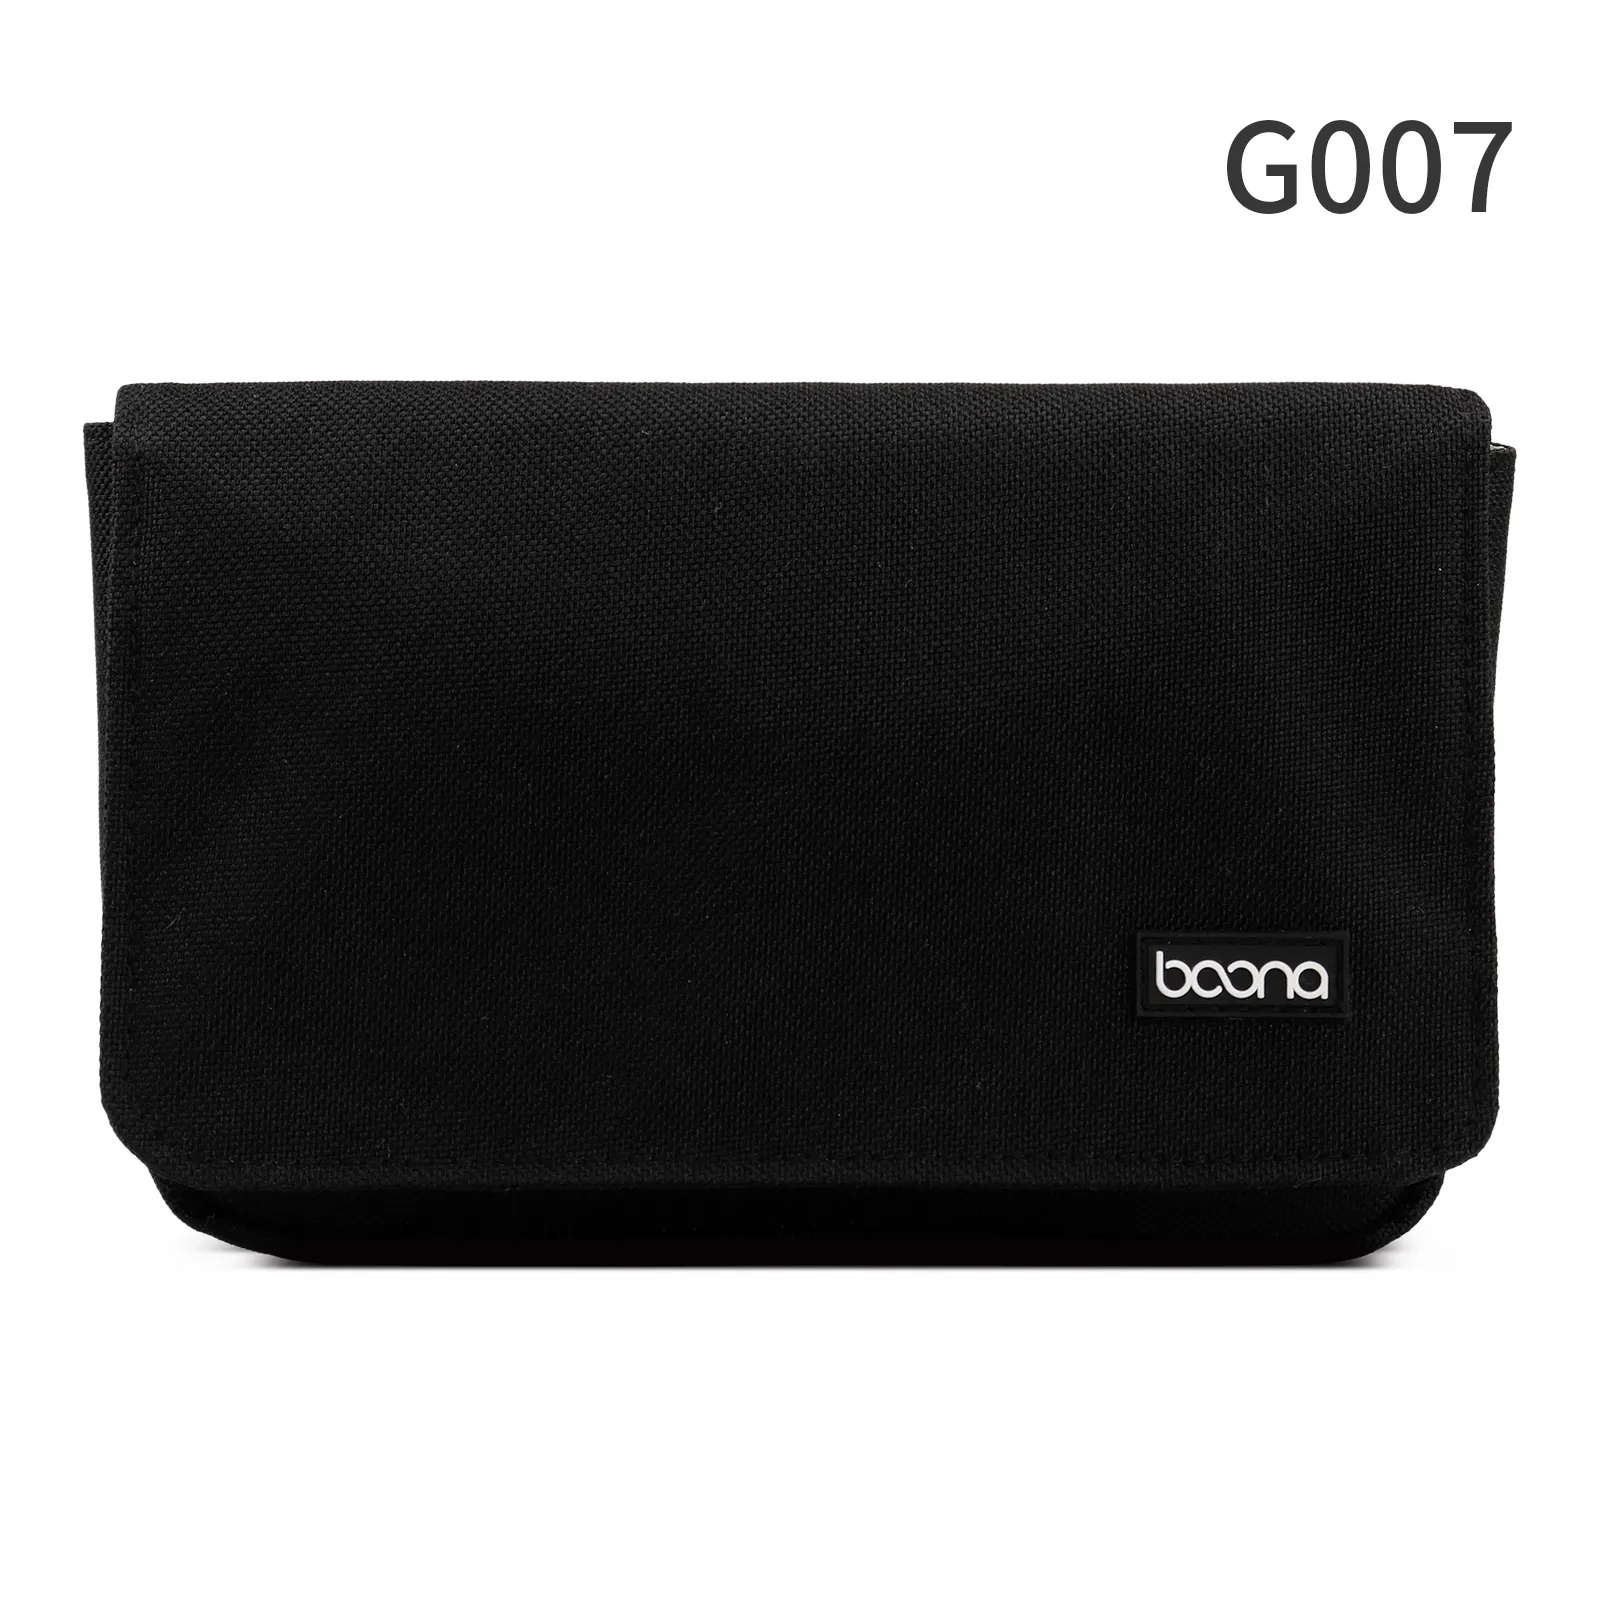 Boona оксфордская сумка для мобильного телефона, спортивный кошелек, сумка для мобильного телефона, кошелек для карт